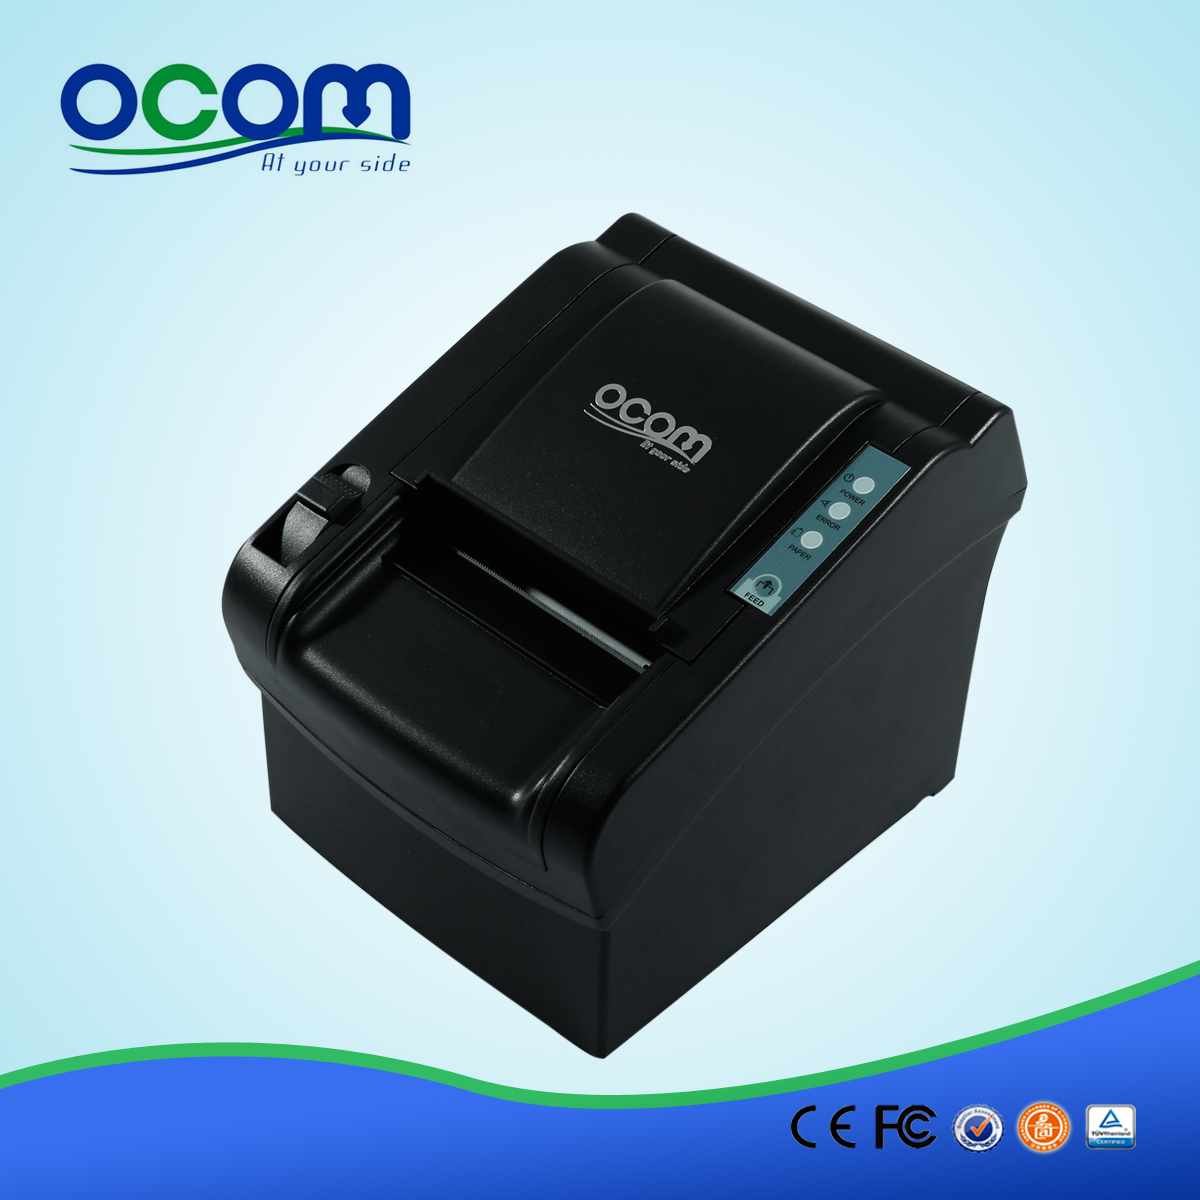 OCPP-802 80mm impact Imprimantes thermiques pour système POS